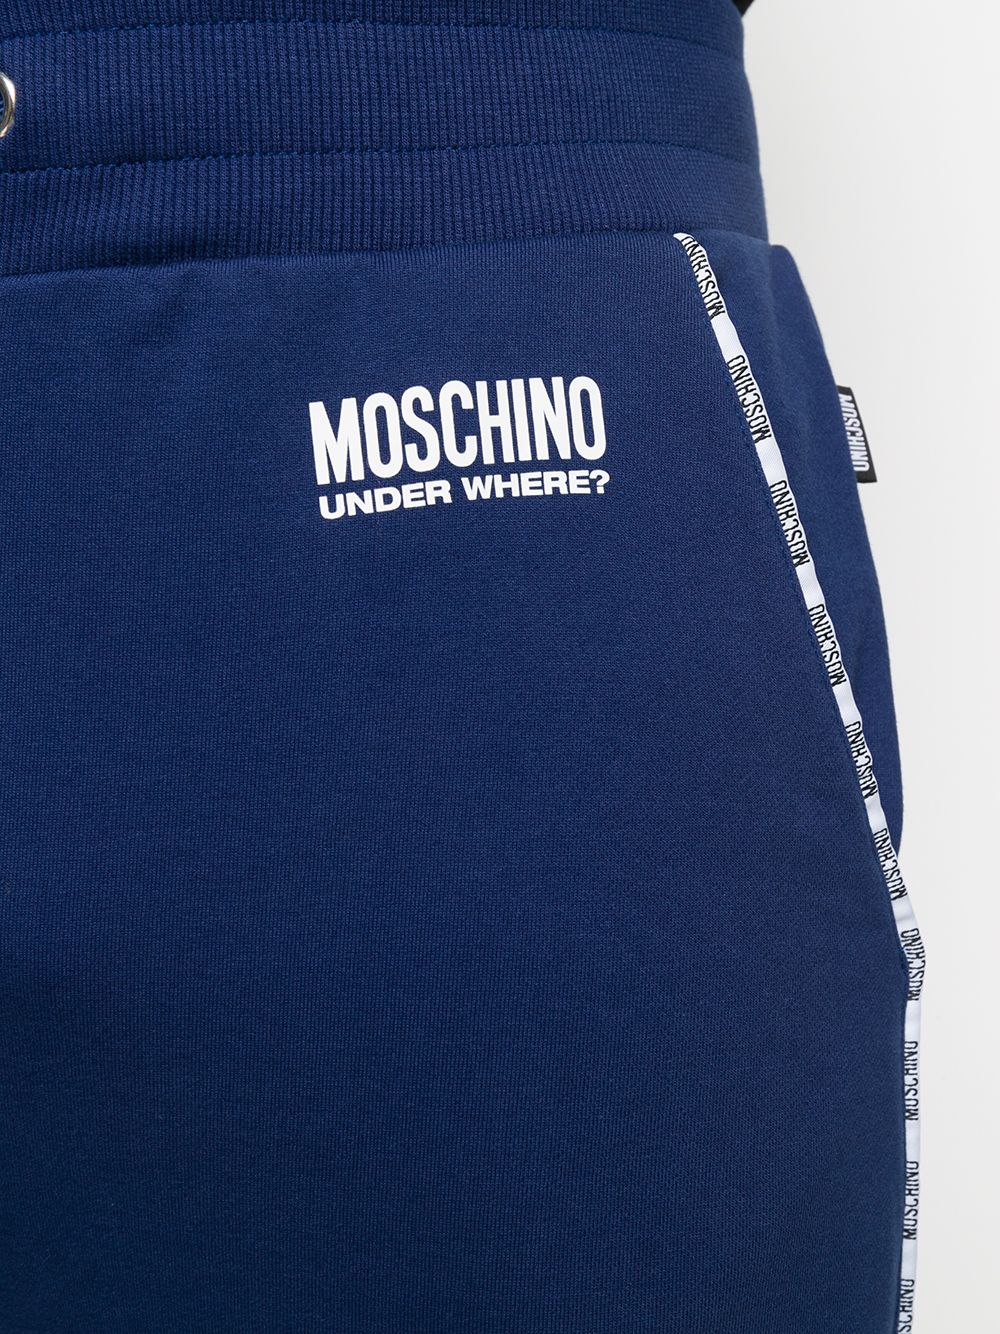 фото Moschino спортивные брюки under where?